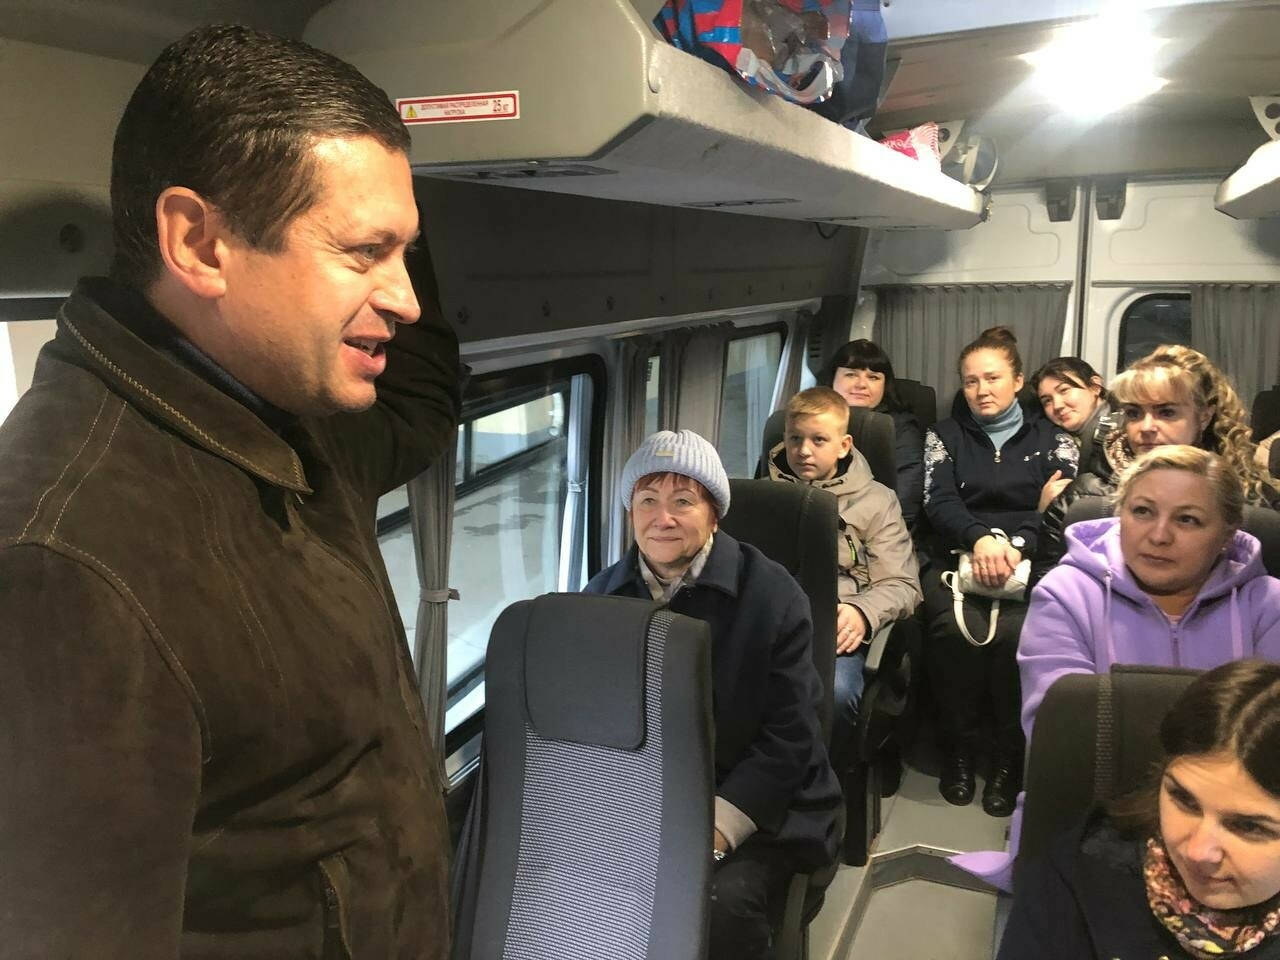 Из Челнов в Казань организовали автобус для семей военнообязанных